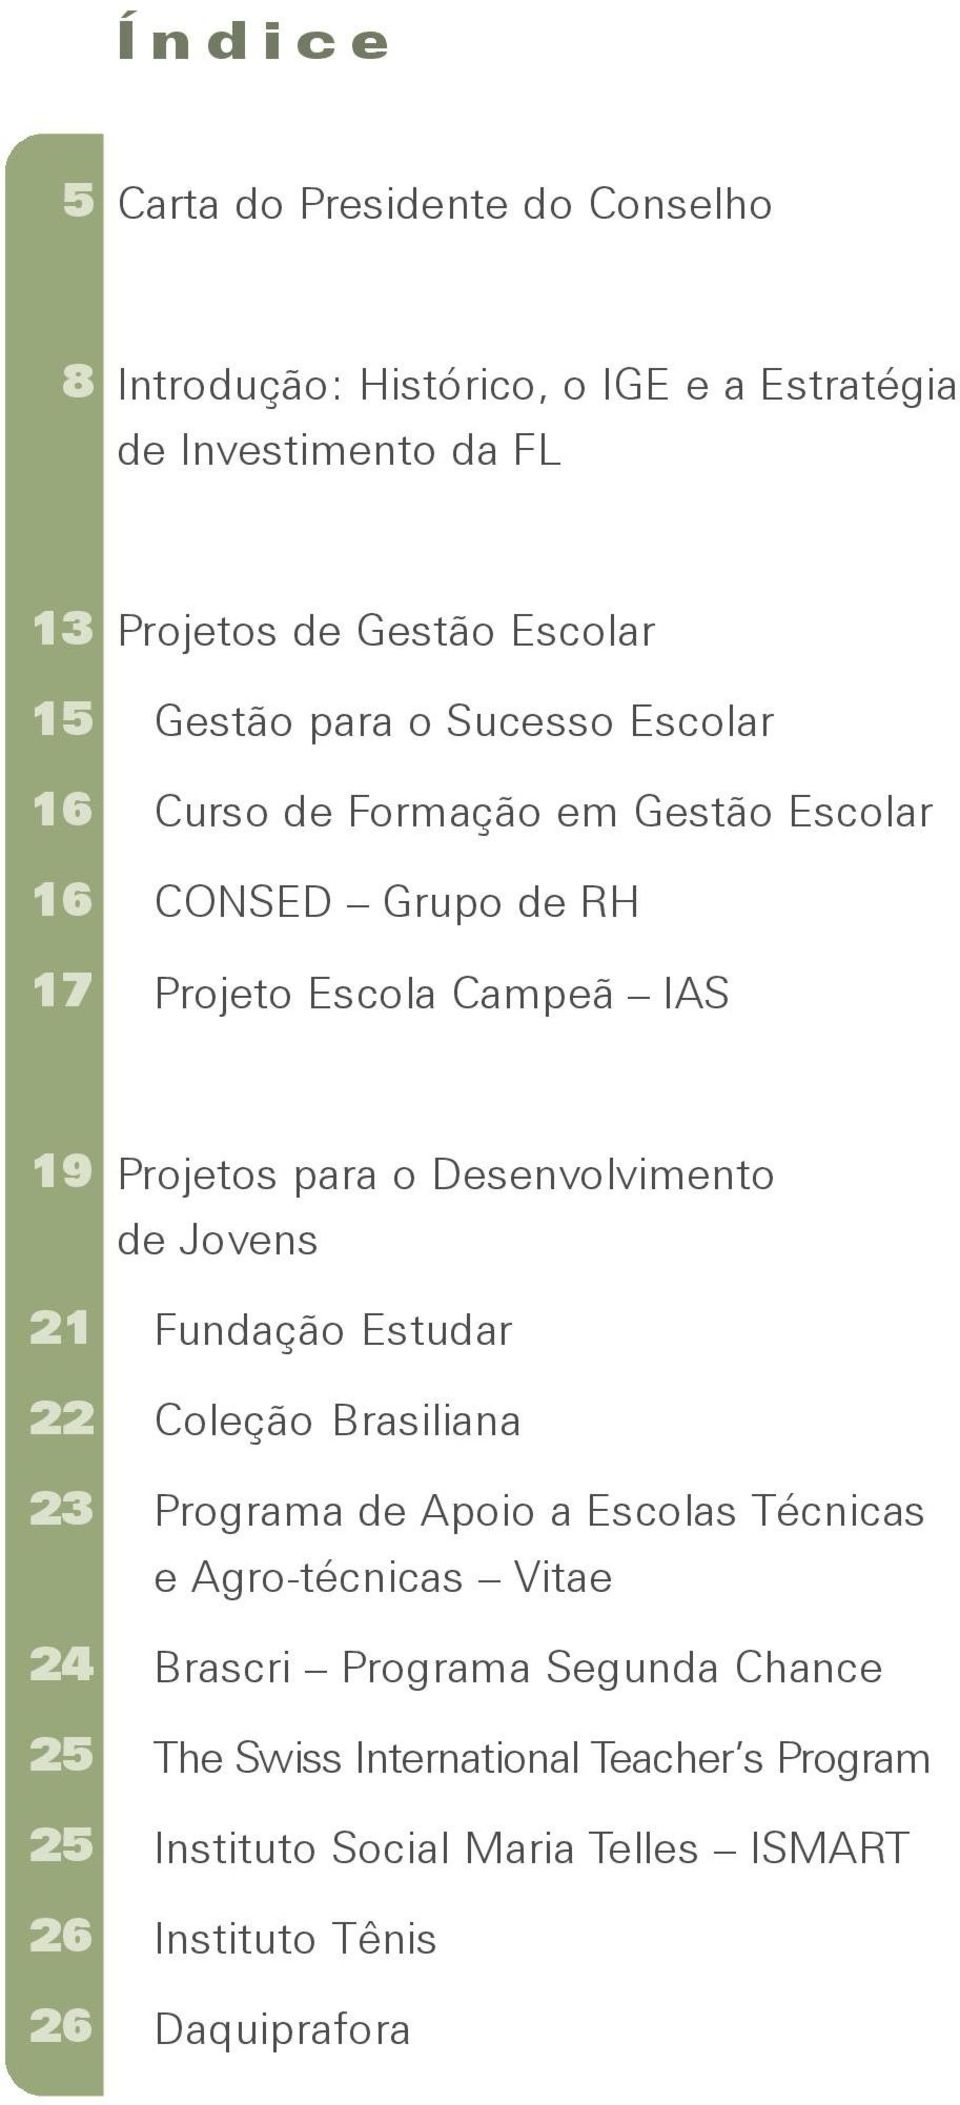 25 25 26 26 Projetos para o Desenvolvimento de Jovens Fundação Estudar Coleção Brasiliana Programa de Apoio a Escolas Técnicas e